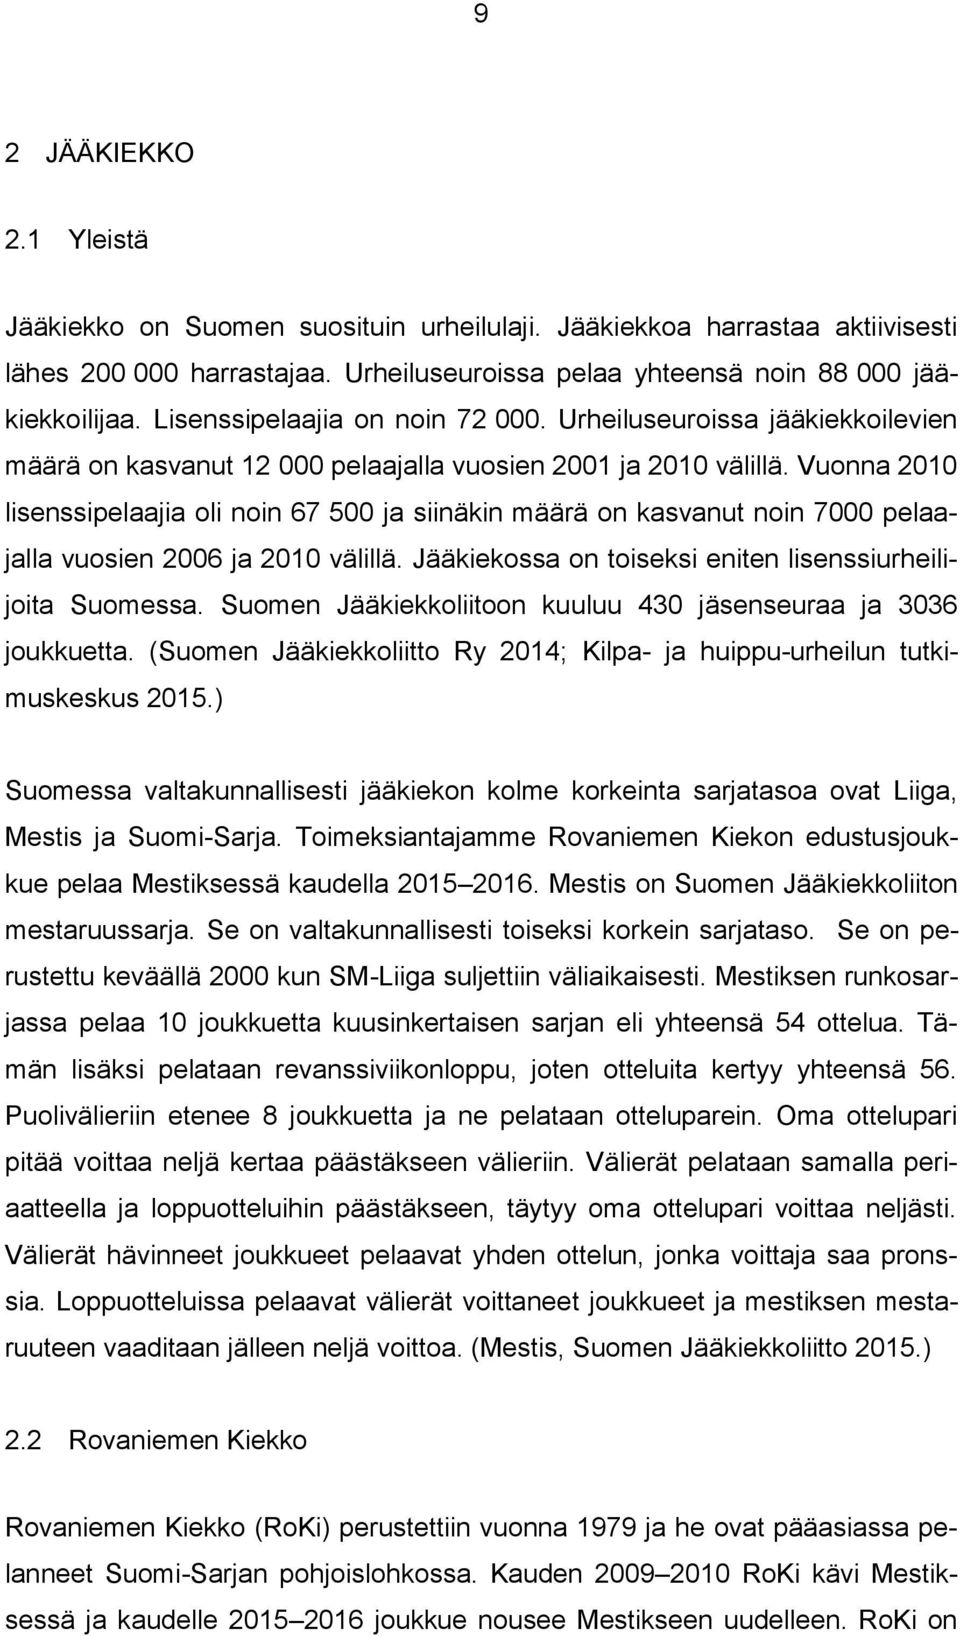 Vuonna 2010 lisenssipelaajia oli noin 67 500 ja siinäkin määrä on kasvanut noin 7000 pelaajalla vuosien 2006 ja 2010 välillä. Jääkiekossa on toiseksi eniten lisenssiurheilijoita Suomessa.